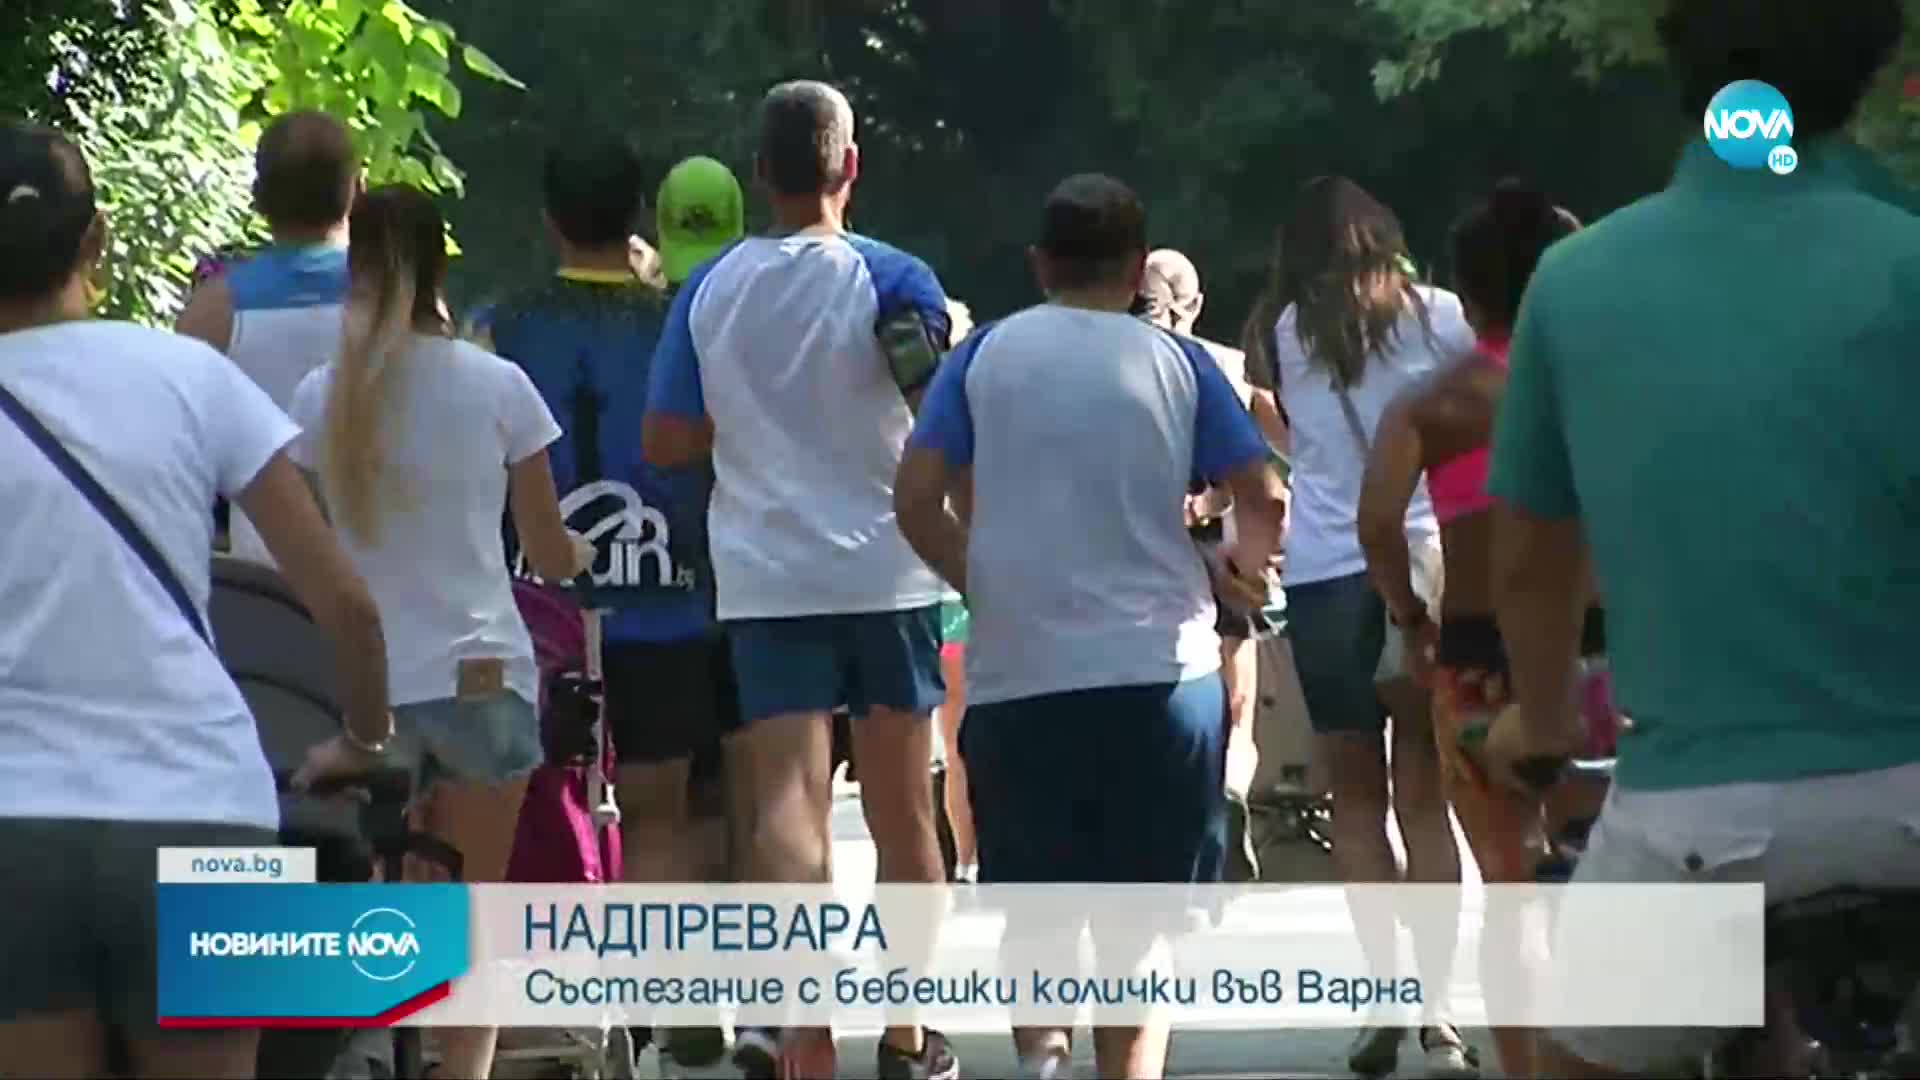 Във Варна организираха първото по рода си надбягване с бебешки колички